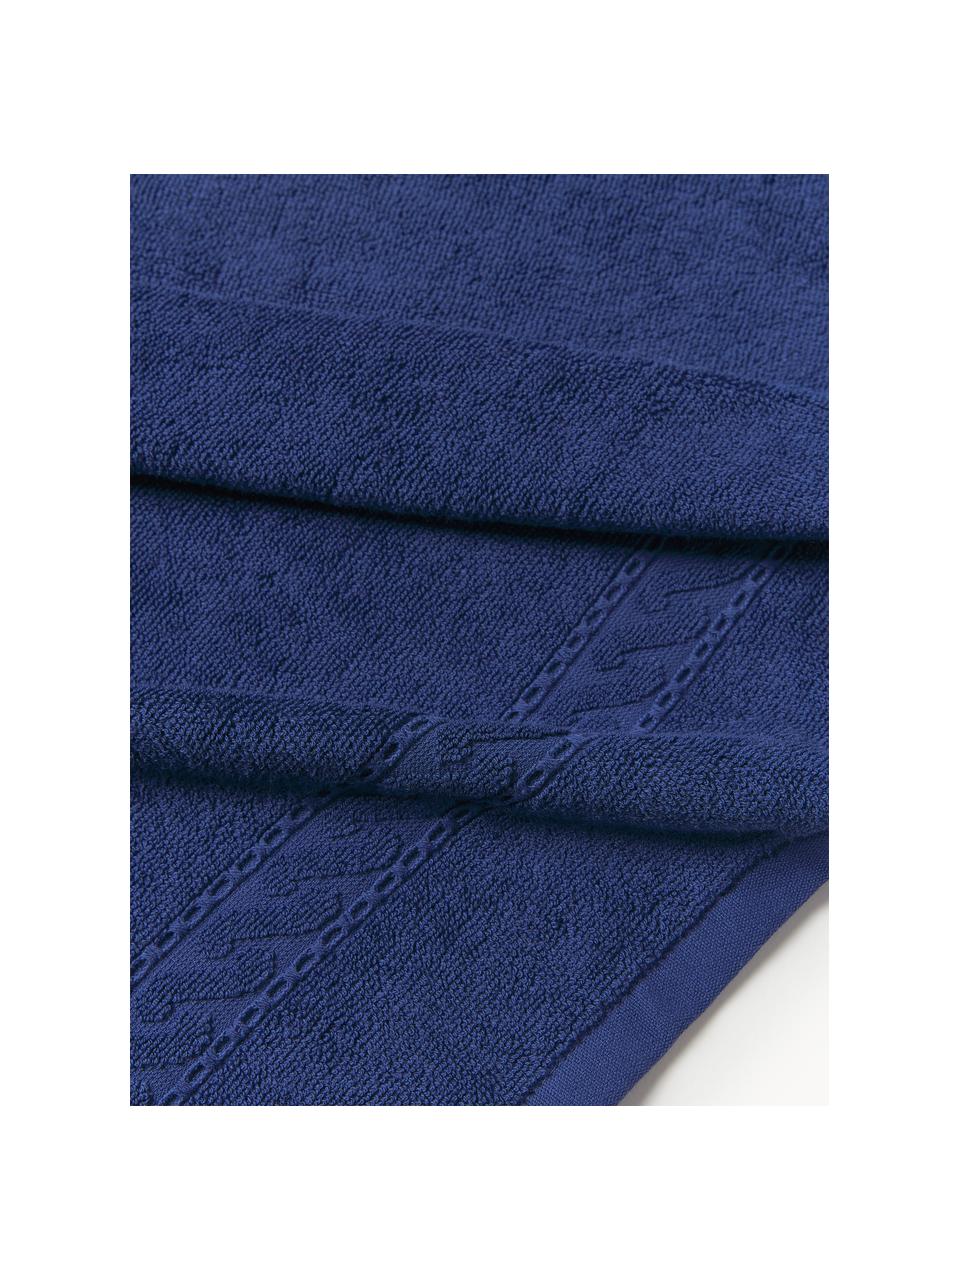 Set de toallas Cordelia, 3 uds., Azul oscuro, Set de 3 (toalla tocador, toalla lavabo y toalla ducha)